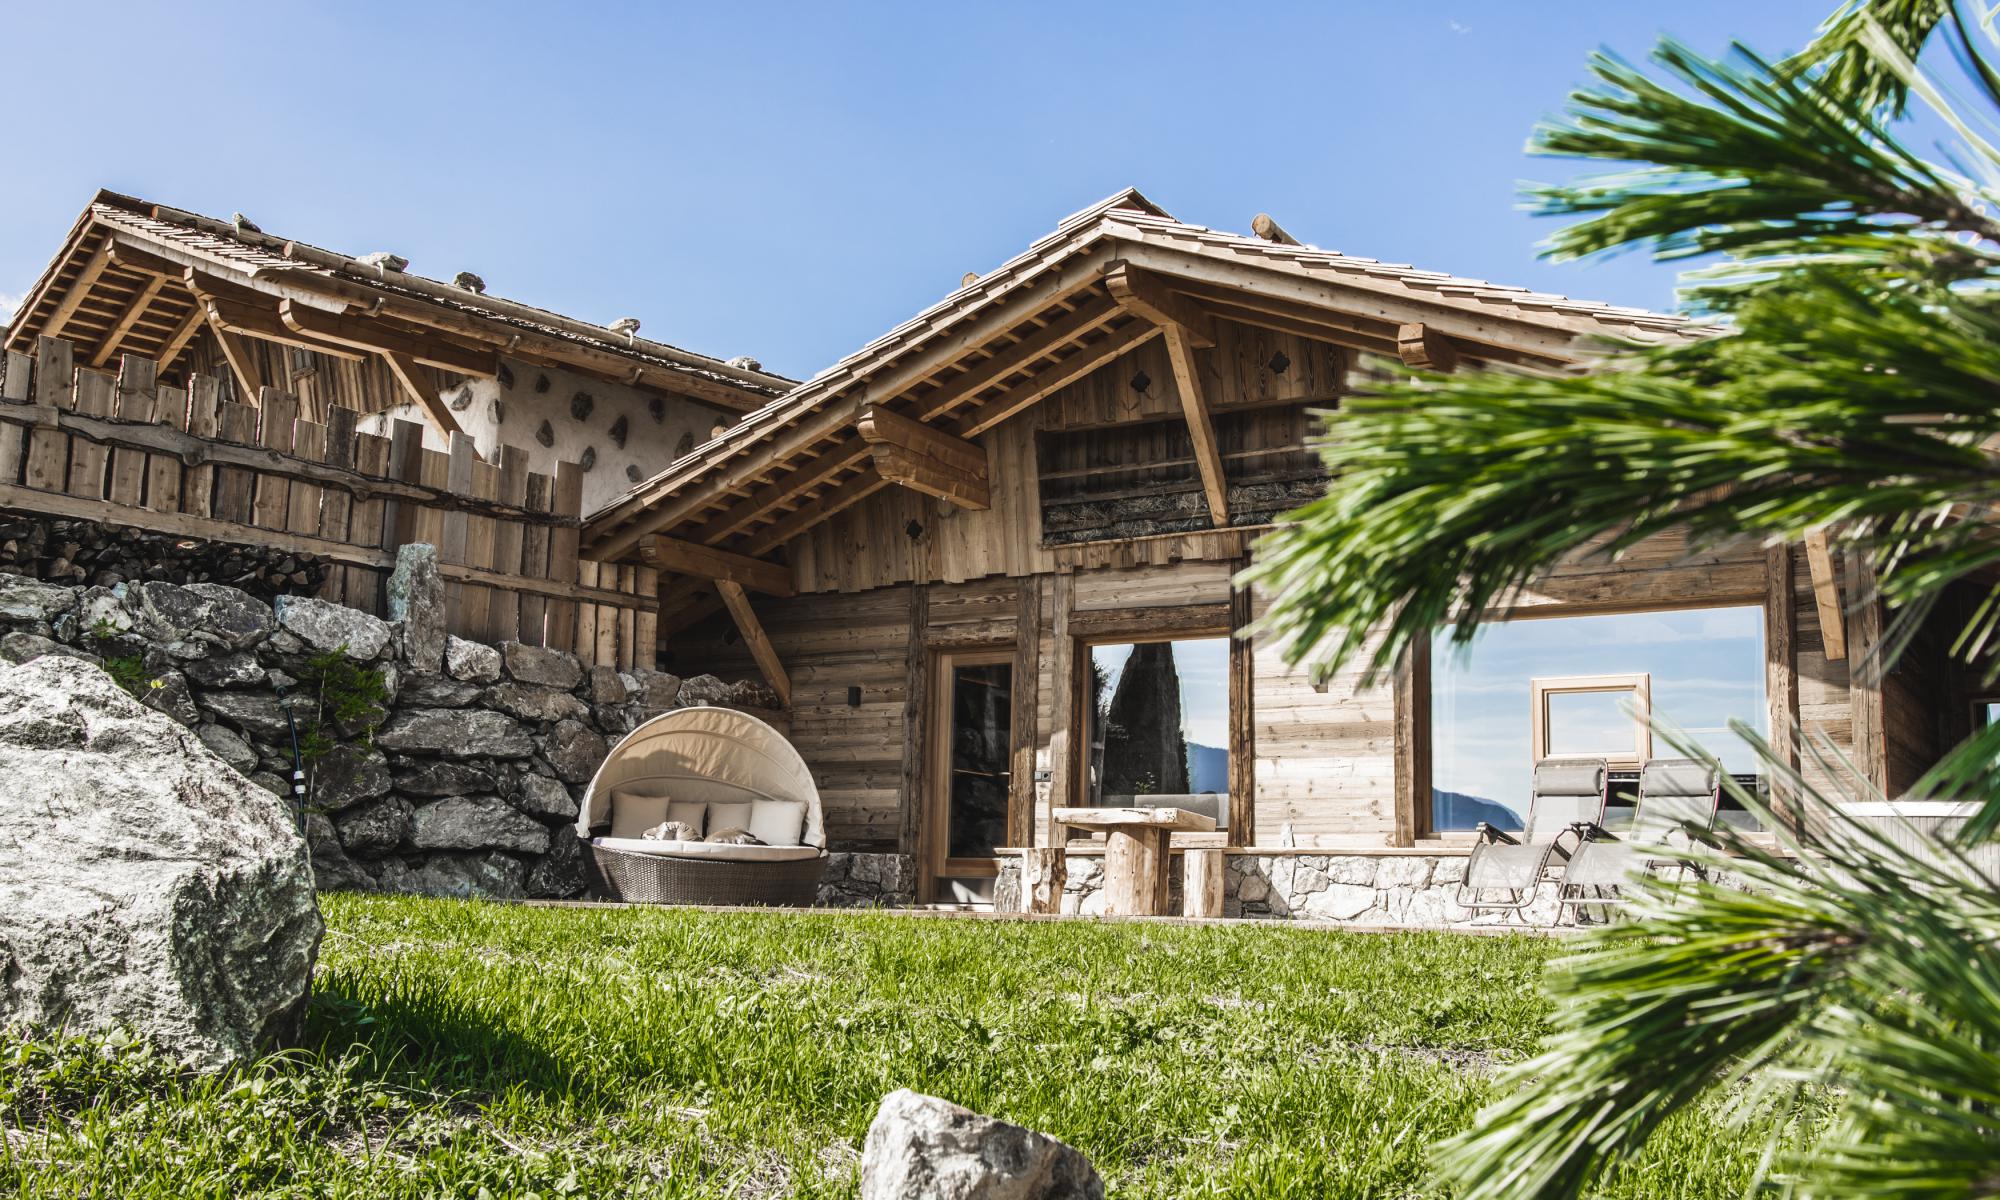 Zu Kirchwies – Luxus Lodges & Chalets in den Dolomiten